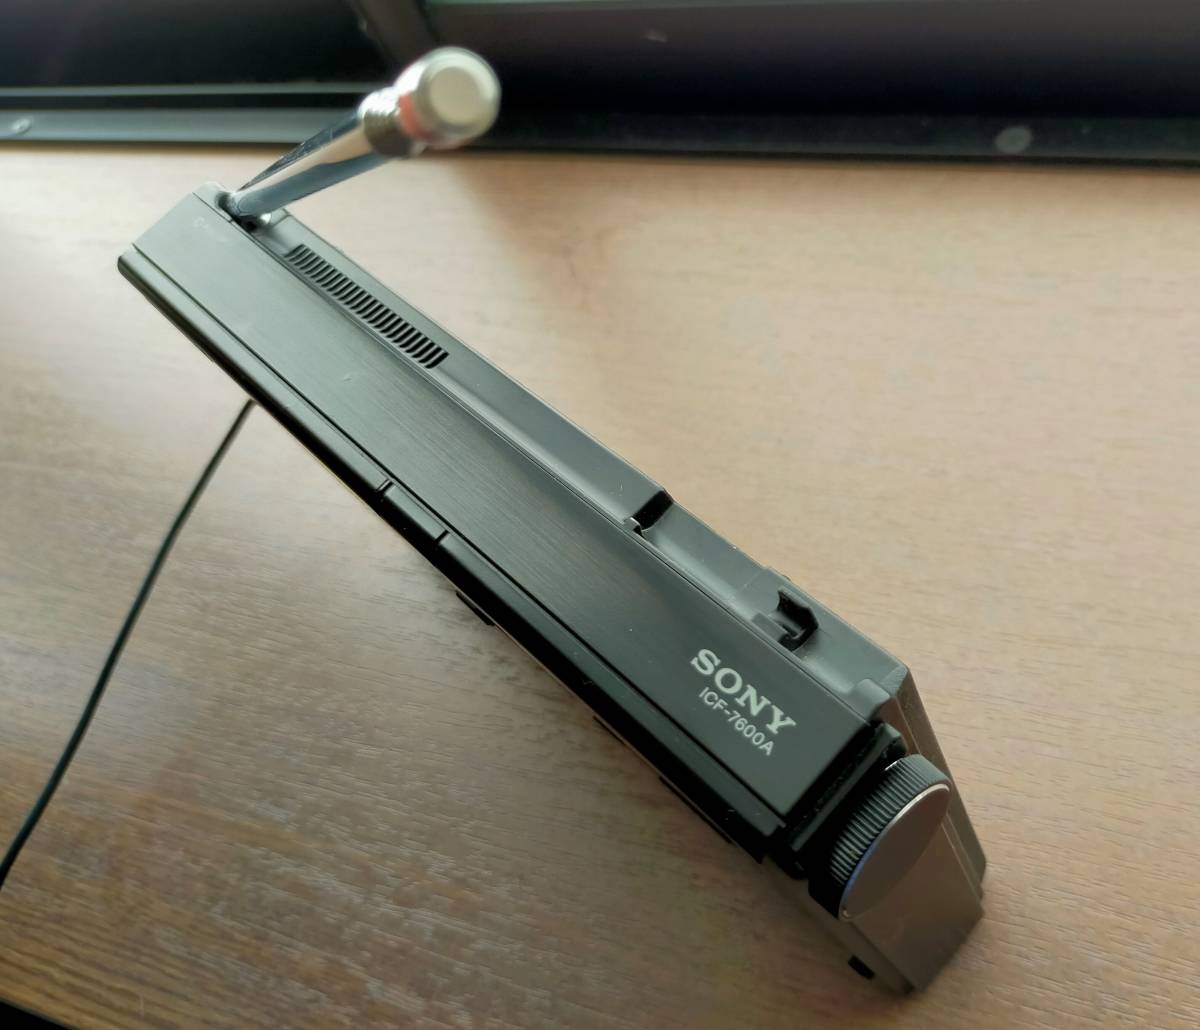  Sony SONY ICF-7600A короткие волны радио прекрасный товар товары долгосрочного хранения * утиль *